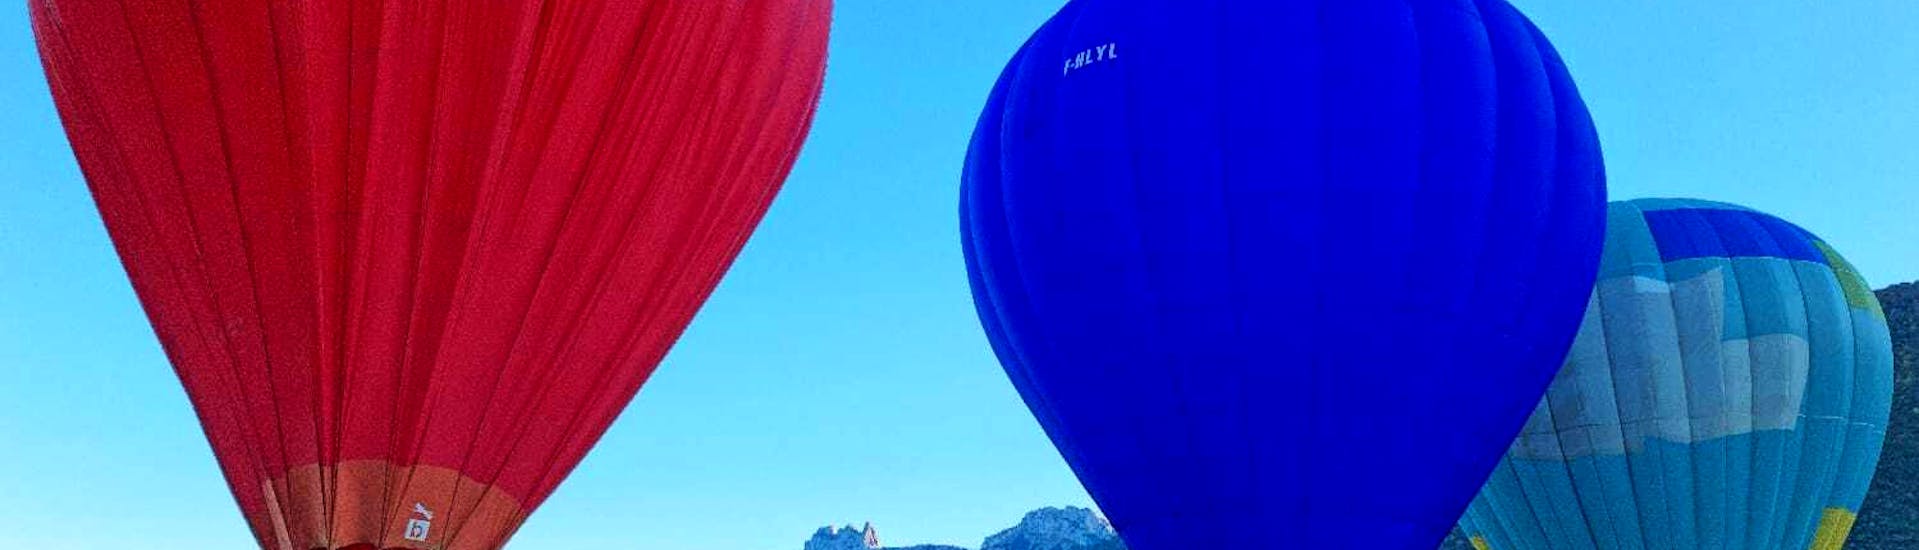 Ballonvaart in Doussard - Meer van Annecy.